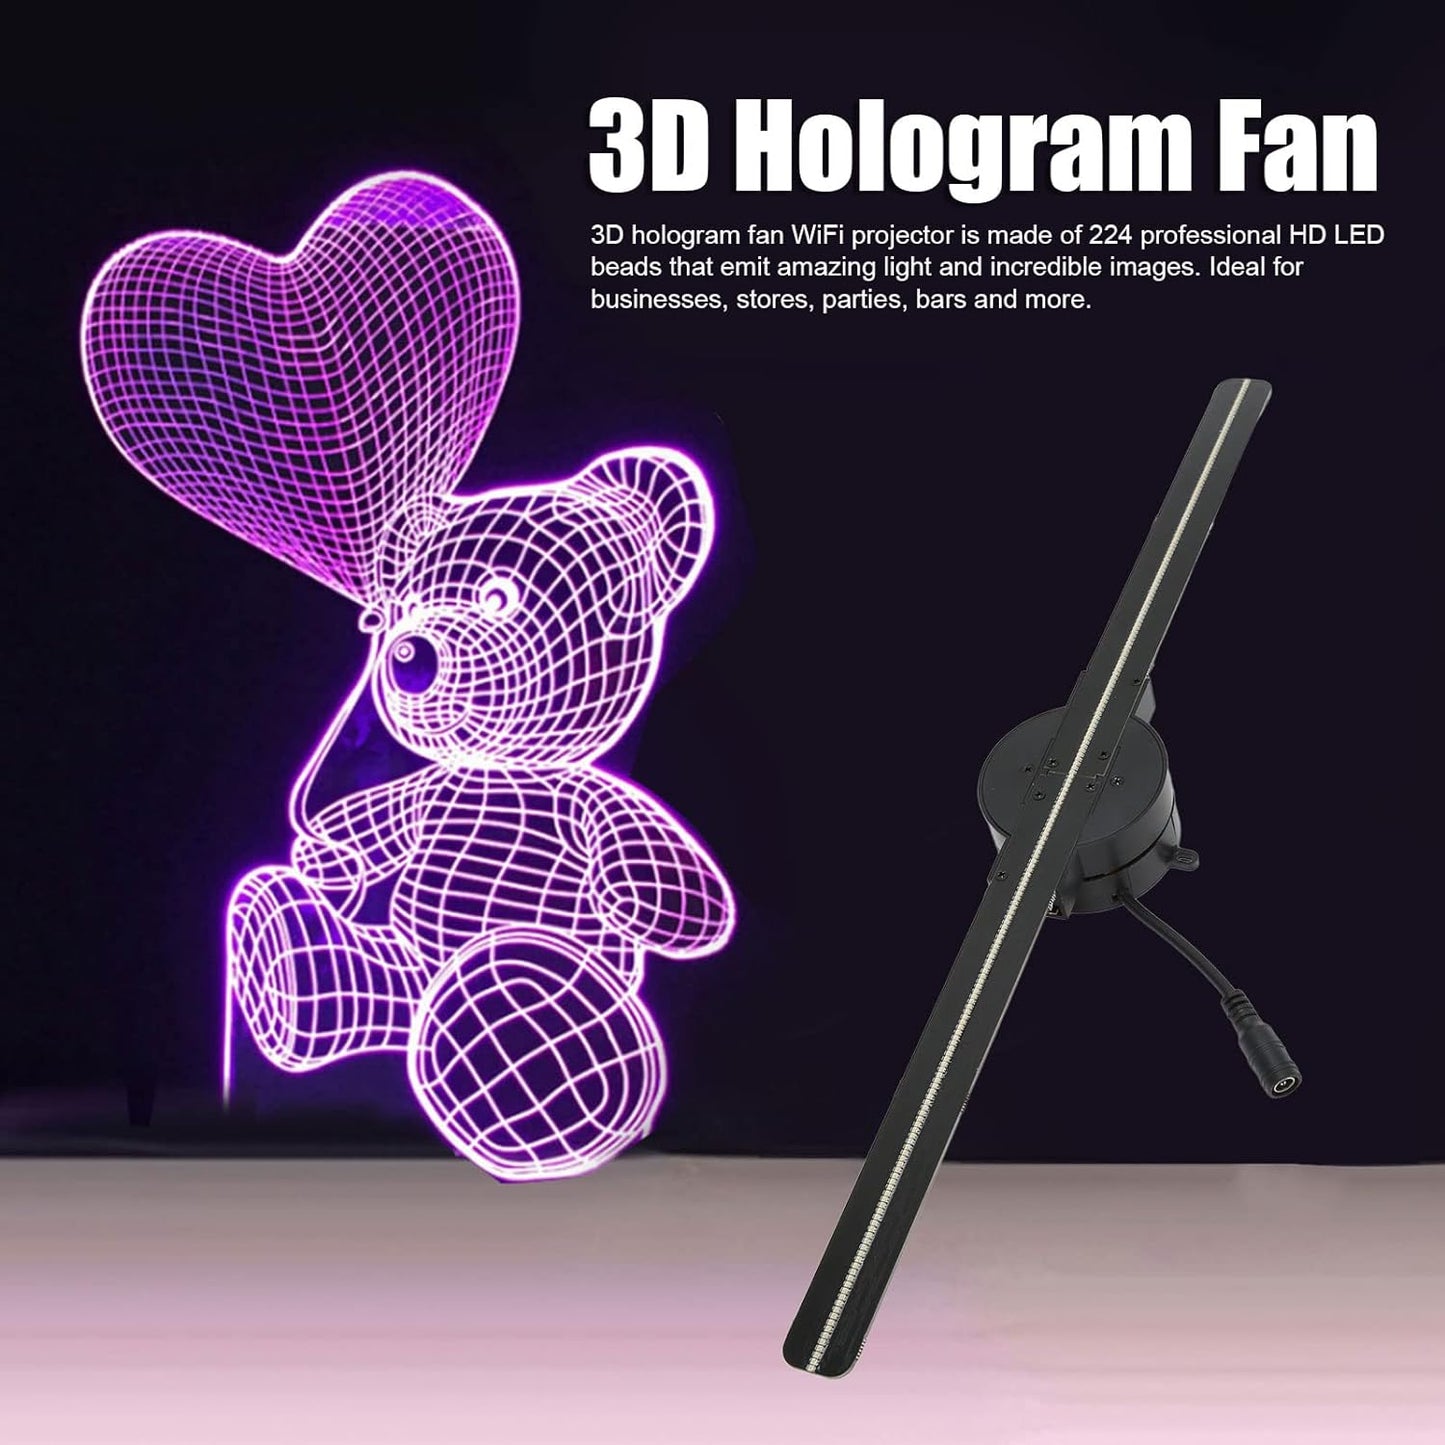 3D Hologram Fan